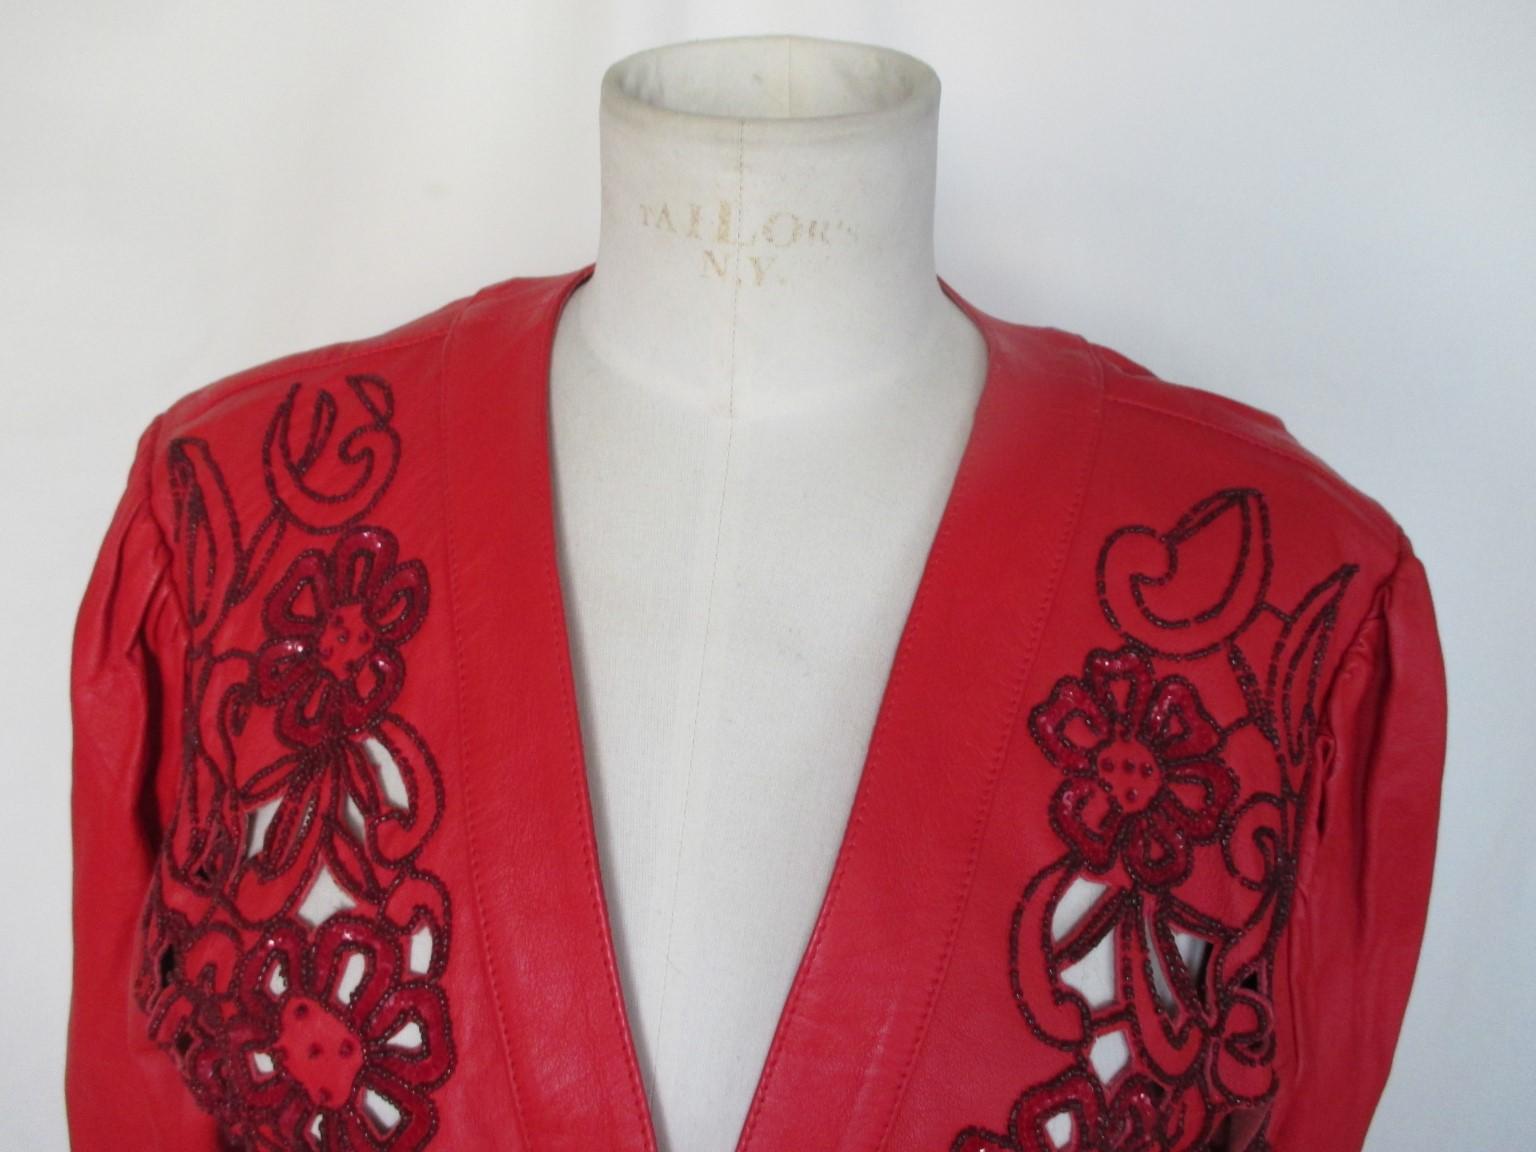 Dies ist eine einzigartige rote Lederbolerojacke im Vintage-Stil. 

Wir bieten weitere exklusive Artikel an, siehe unseren Frontstore.

Einzelheiten:
Blume offen Stickerei Leder vorne mit Perlen, passt wie ein Bolero.
Etwa aus den 1980er